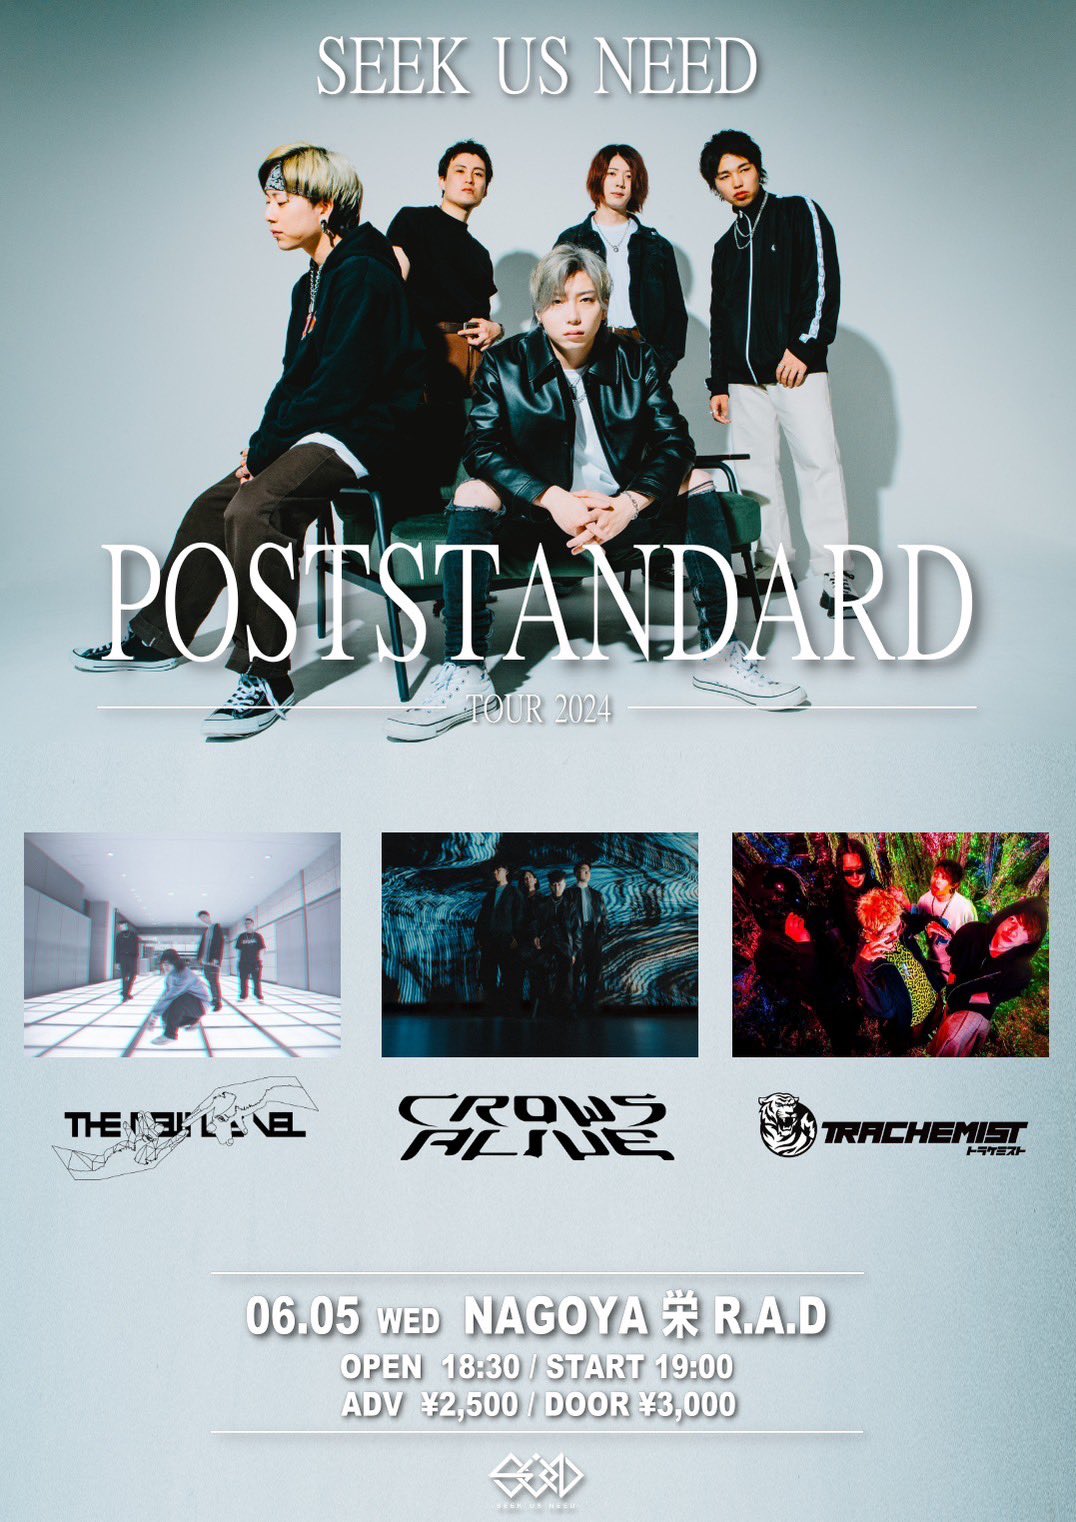 SEEK US NEED "POSTSTANDARD TOUR 2024"